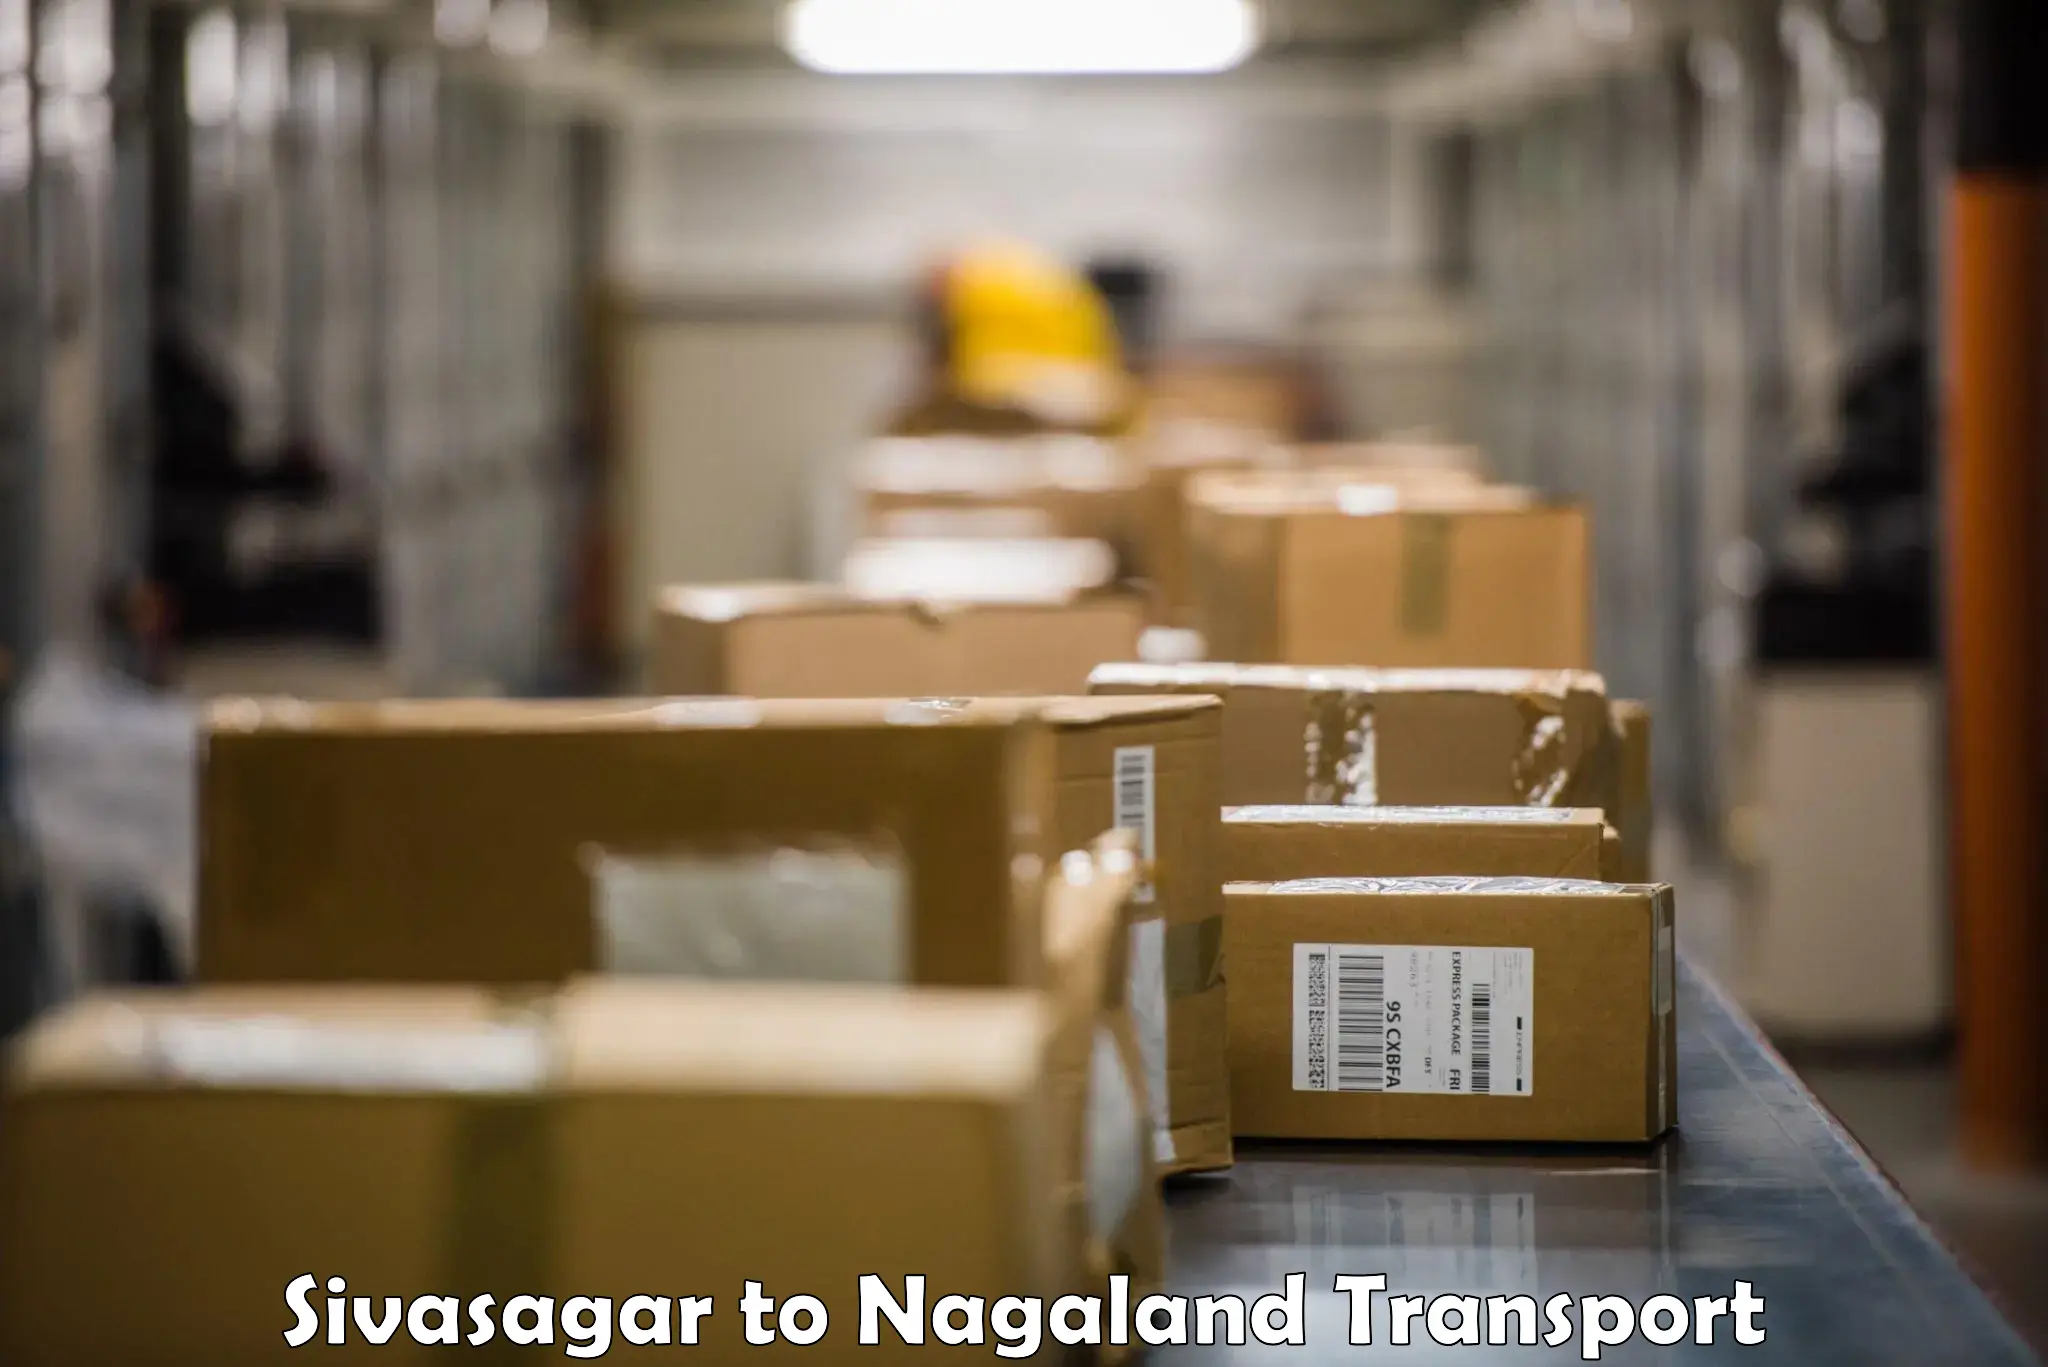 Cycle transportation service Sivasagar to NIT Nagaland